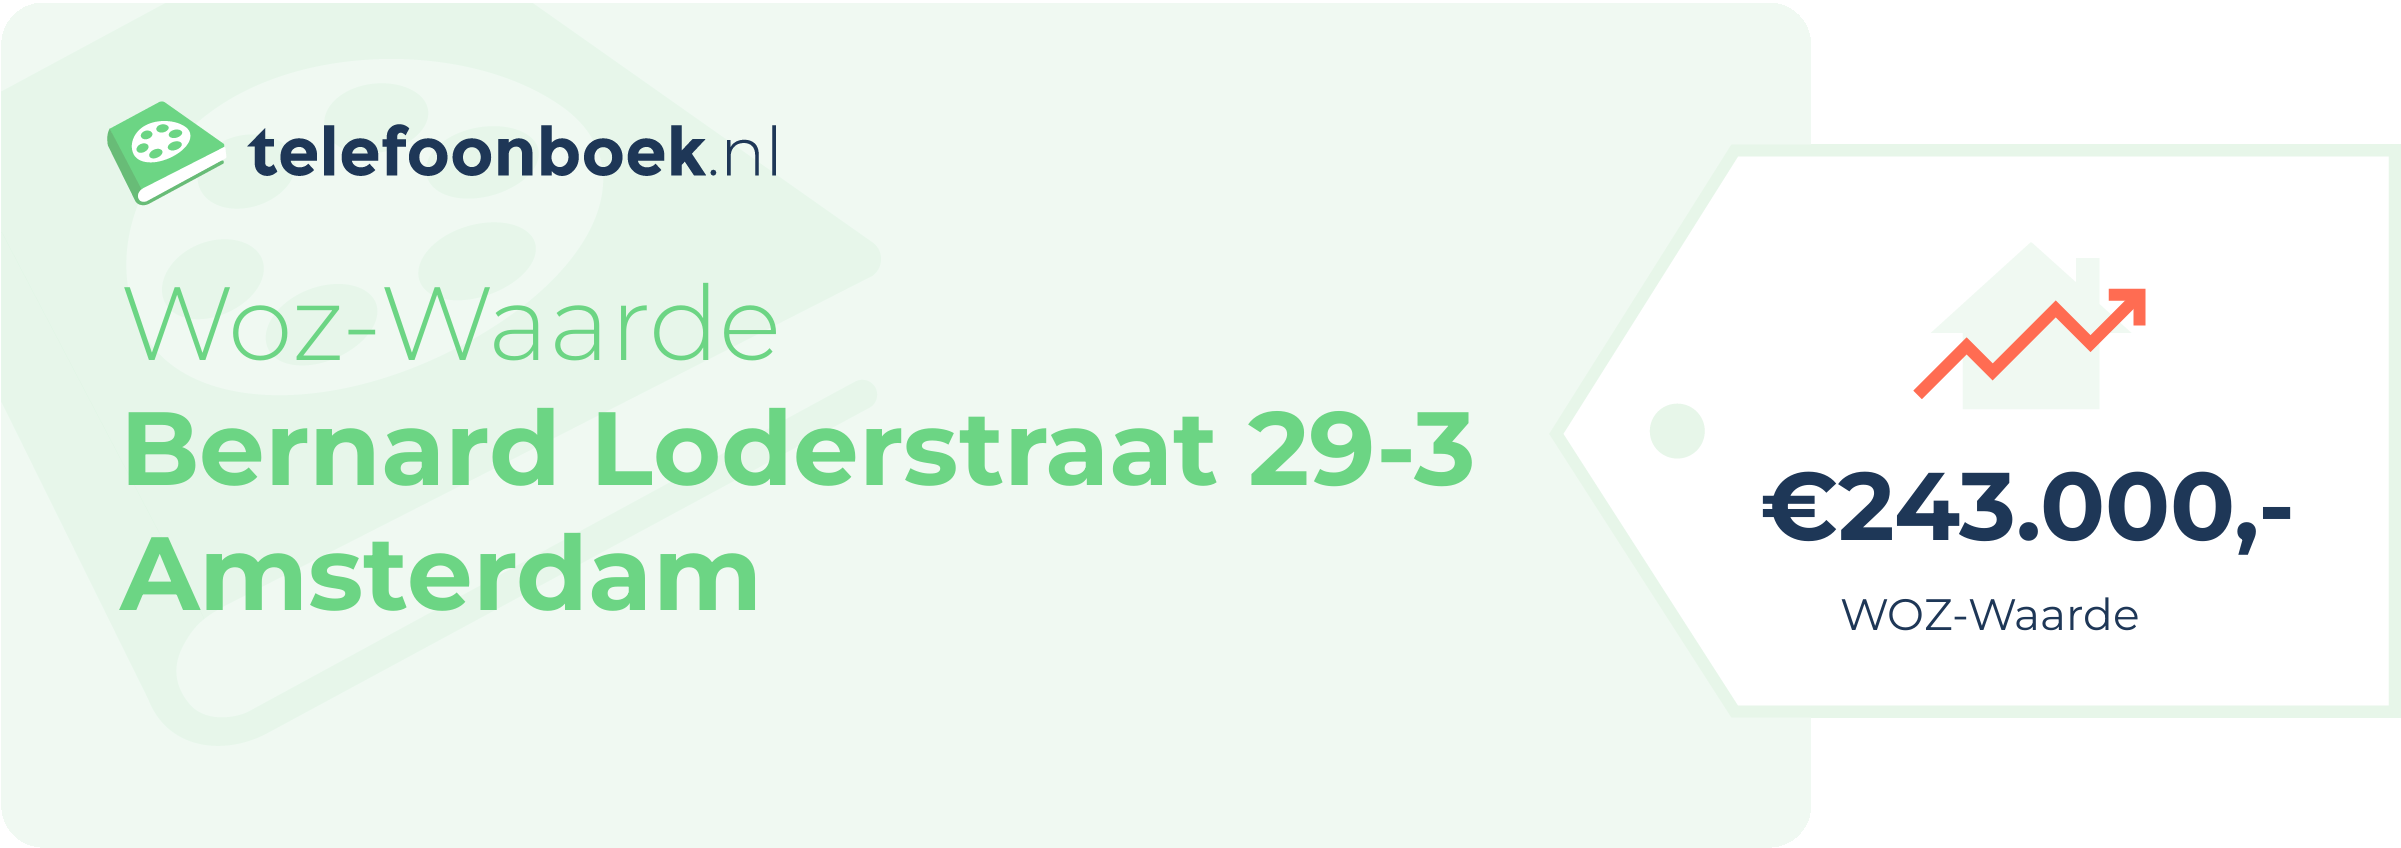 WOZ-waarde Bernard Loderstraat 29-3 Amsterdam